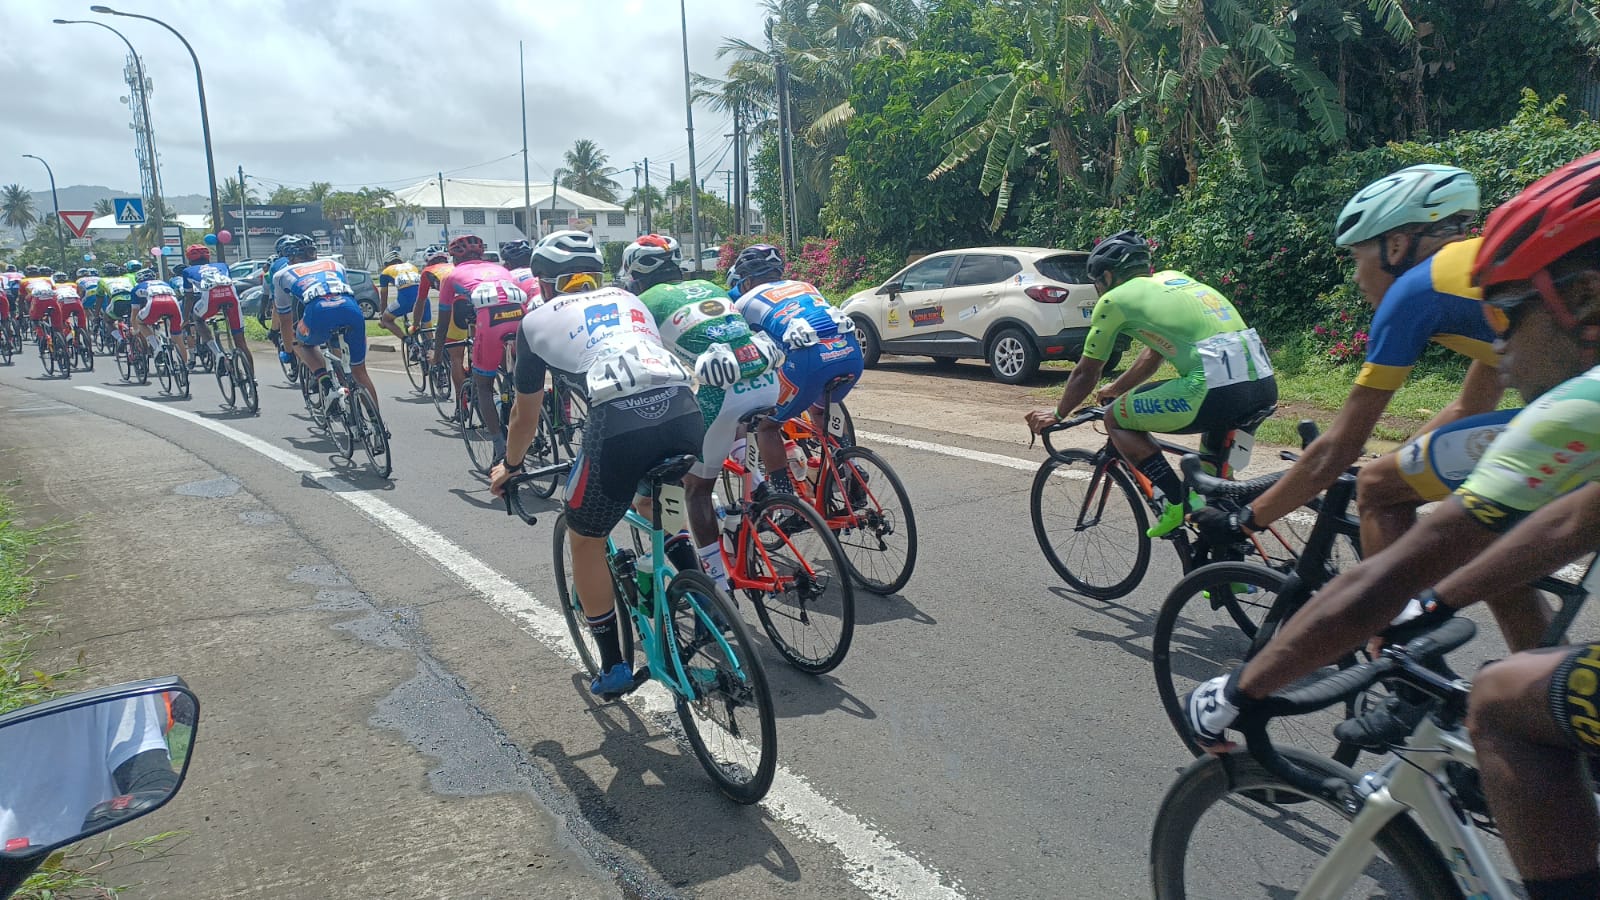     Tour cycliste de Martinique 2022 : Marin-Fort-de-France et un contre-la-montre pour la deuxième étape 

